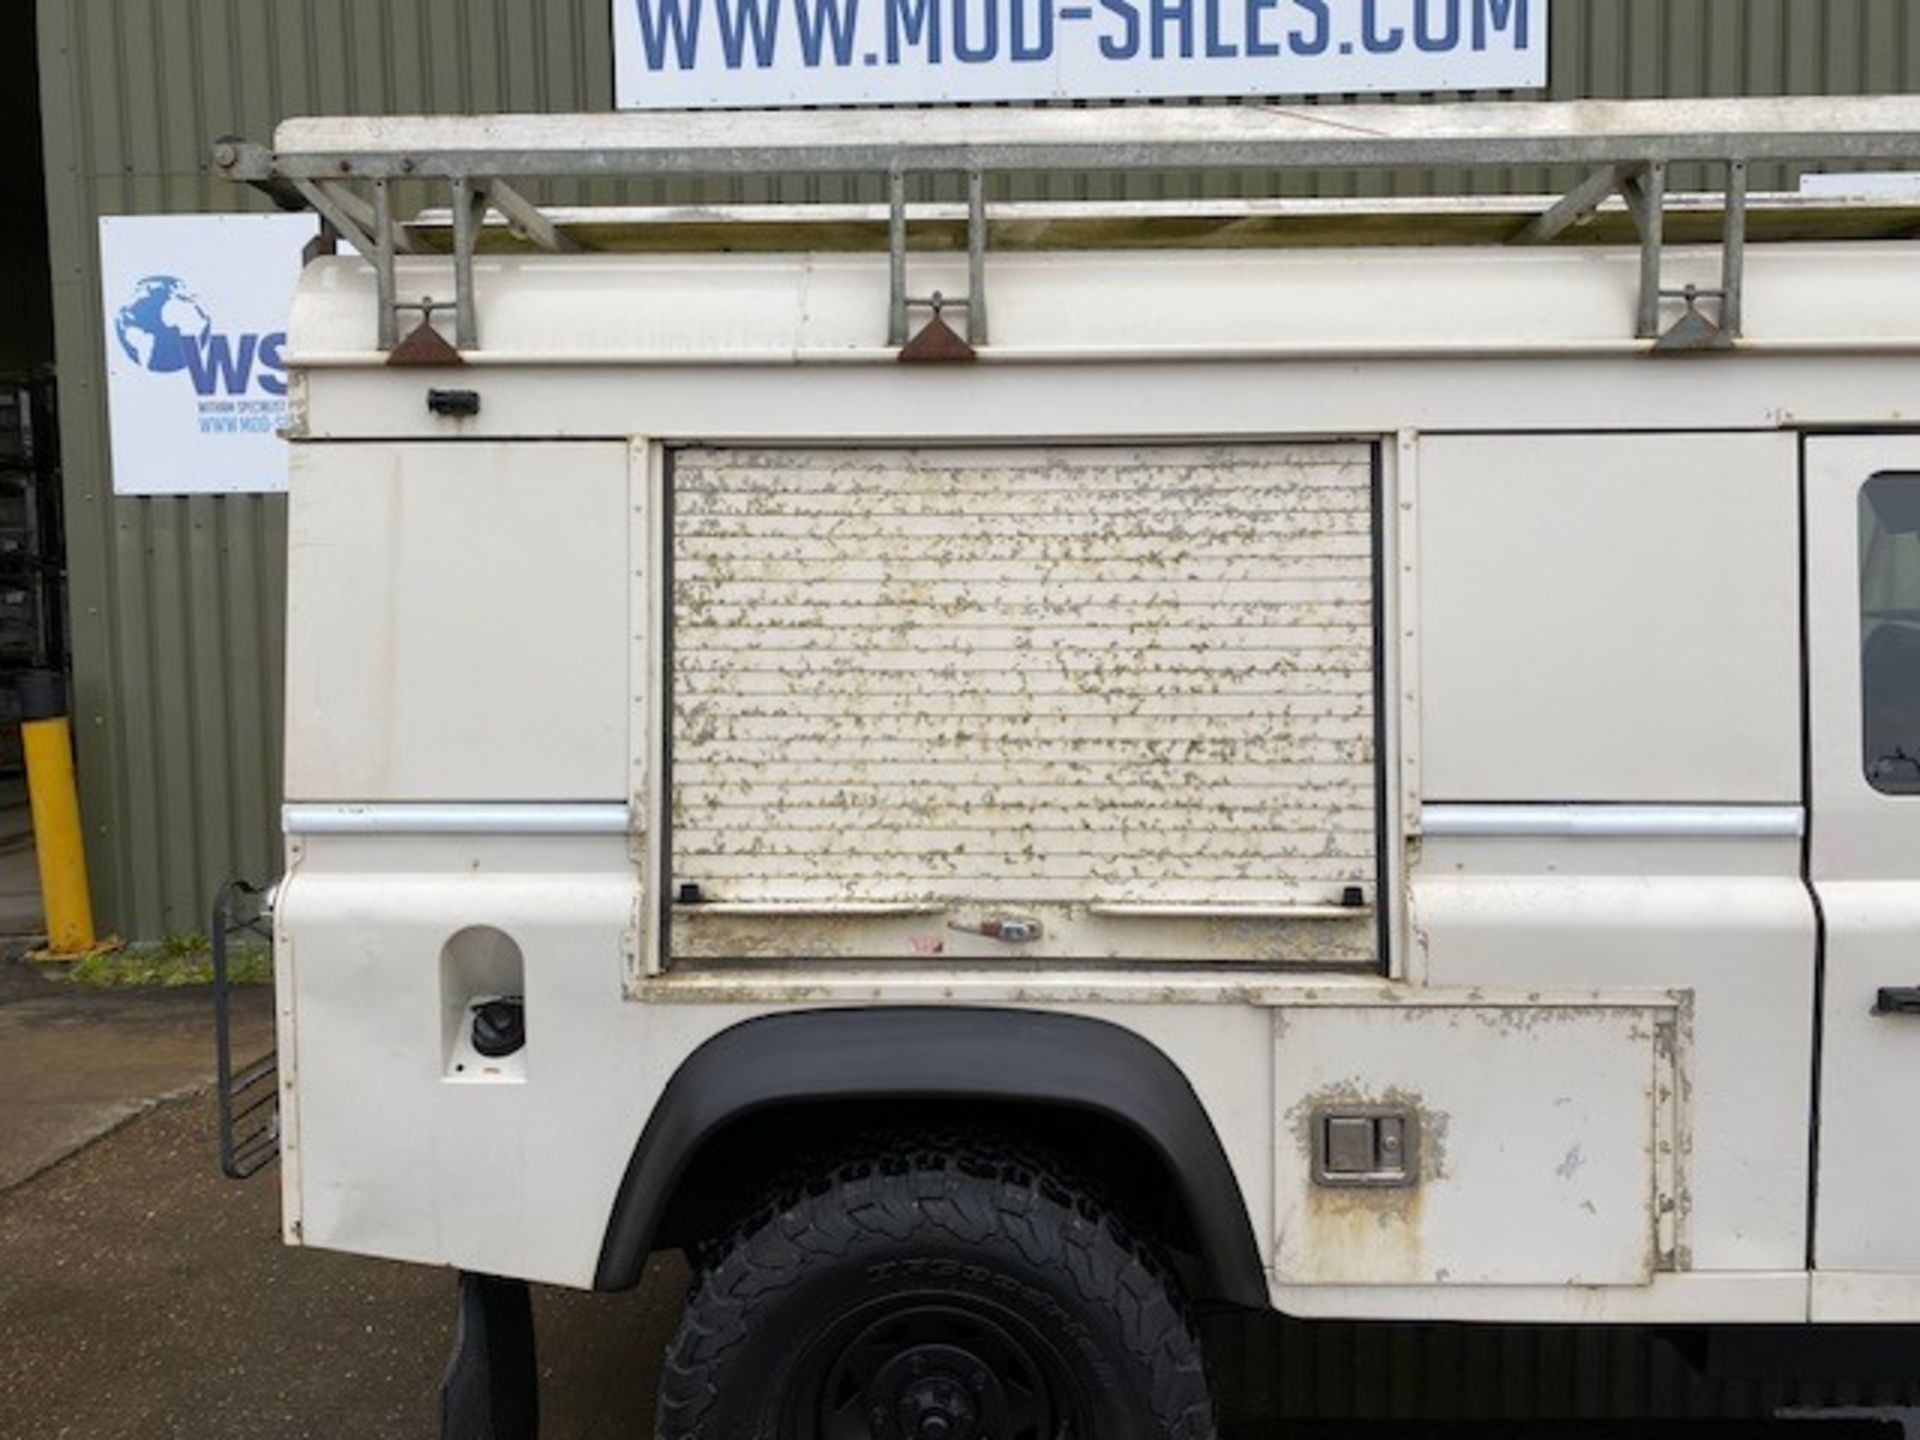 Land Rover Defender 110 2.4 Utility (mobile workshop) - Image 20 of 64